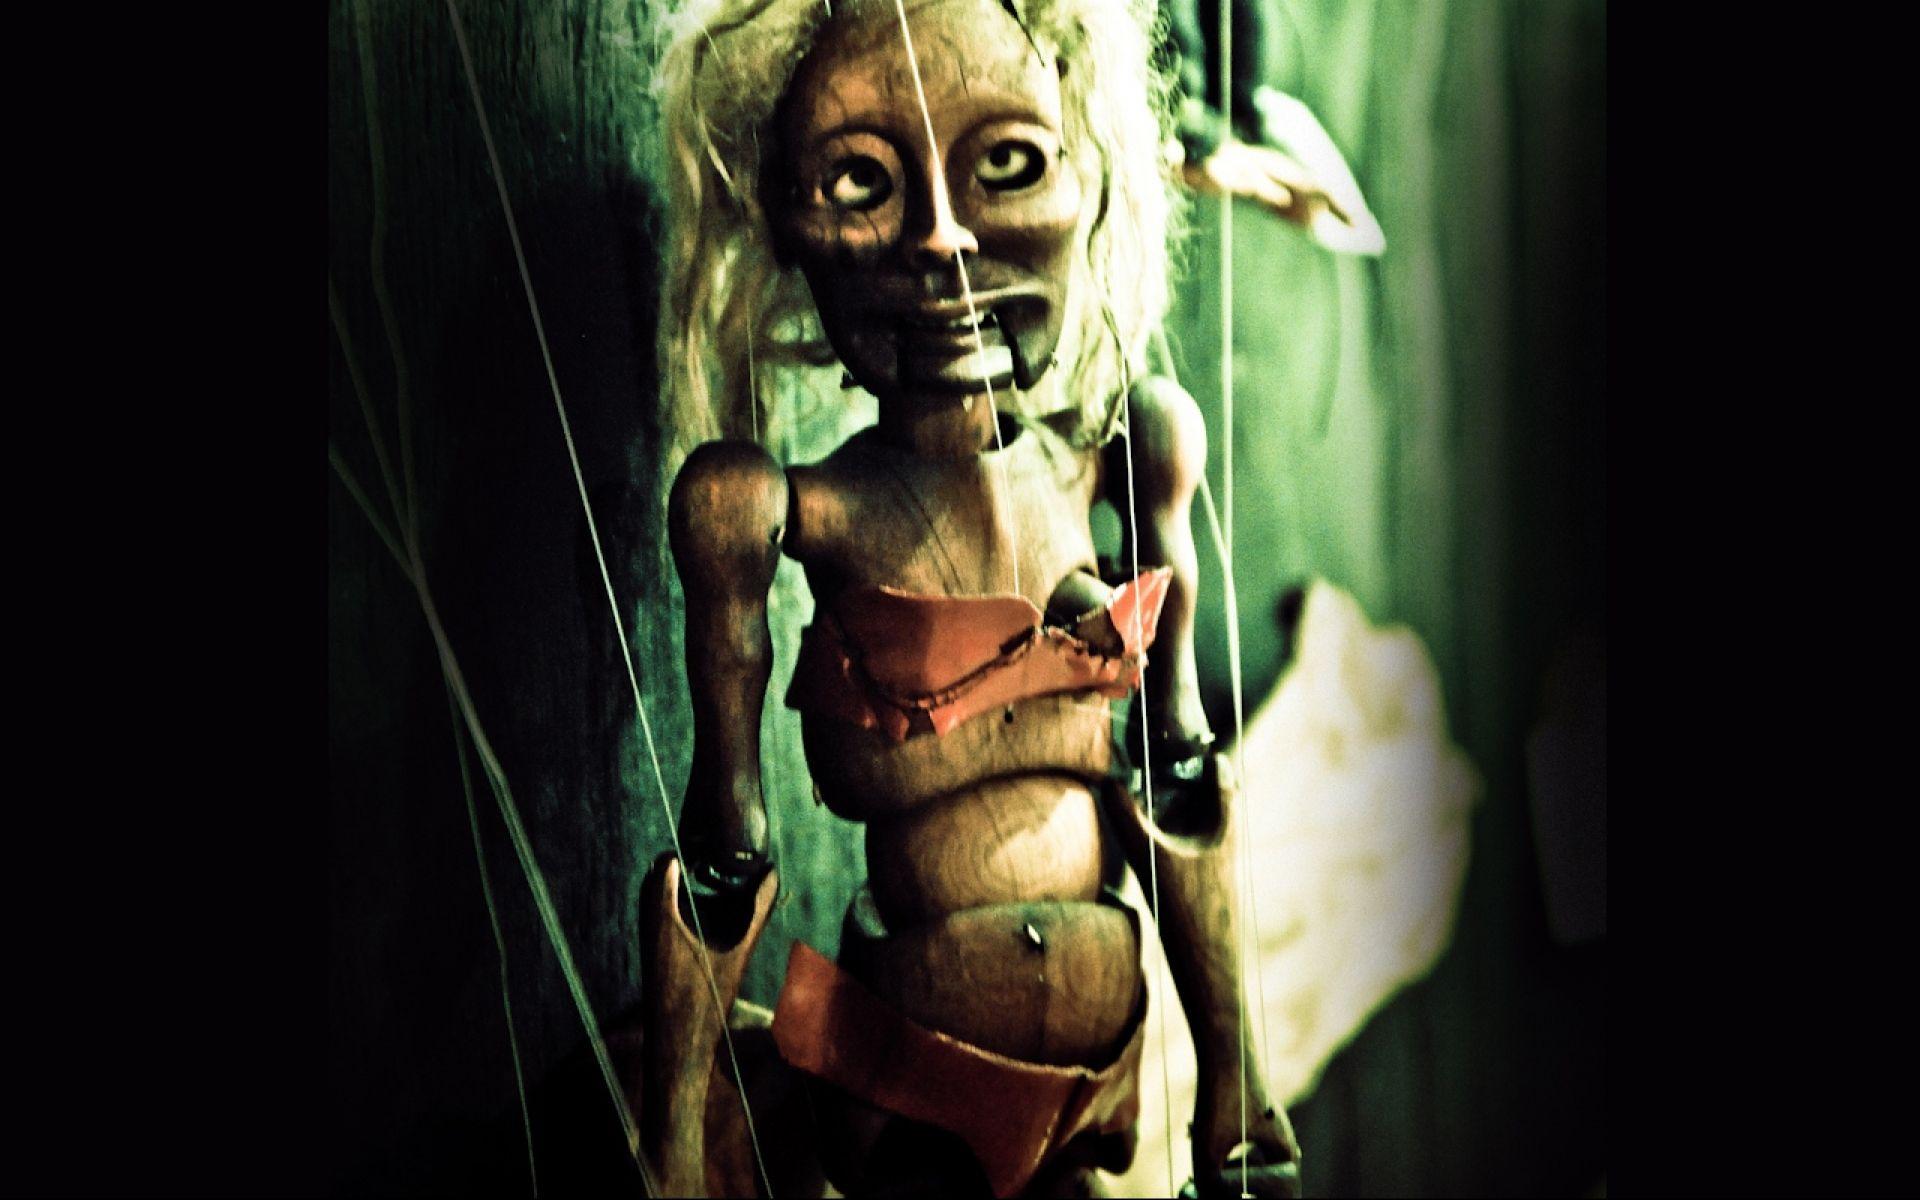 Dark horror macabre gothic puppet art wallpaperx1200